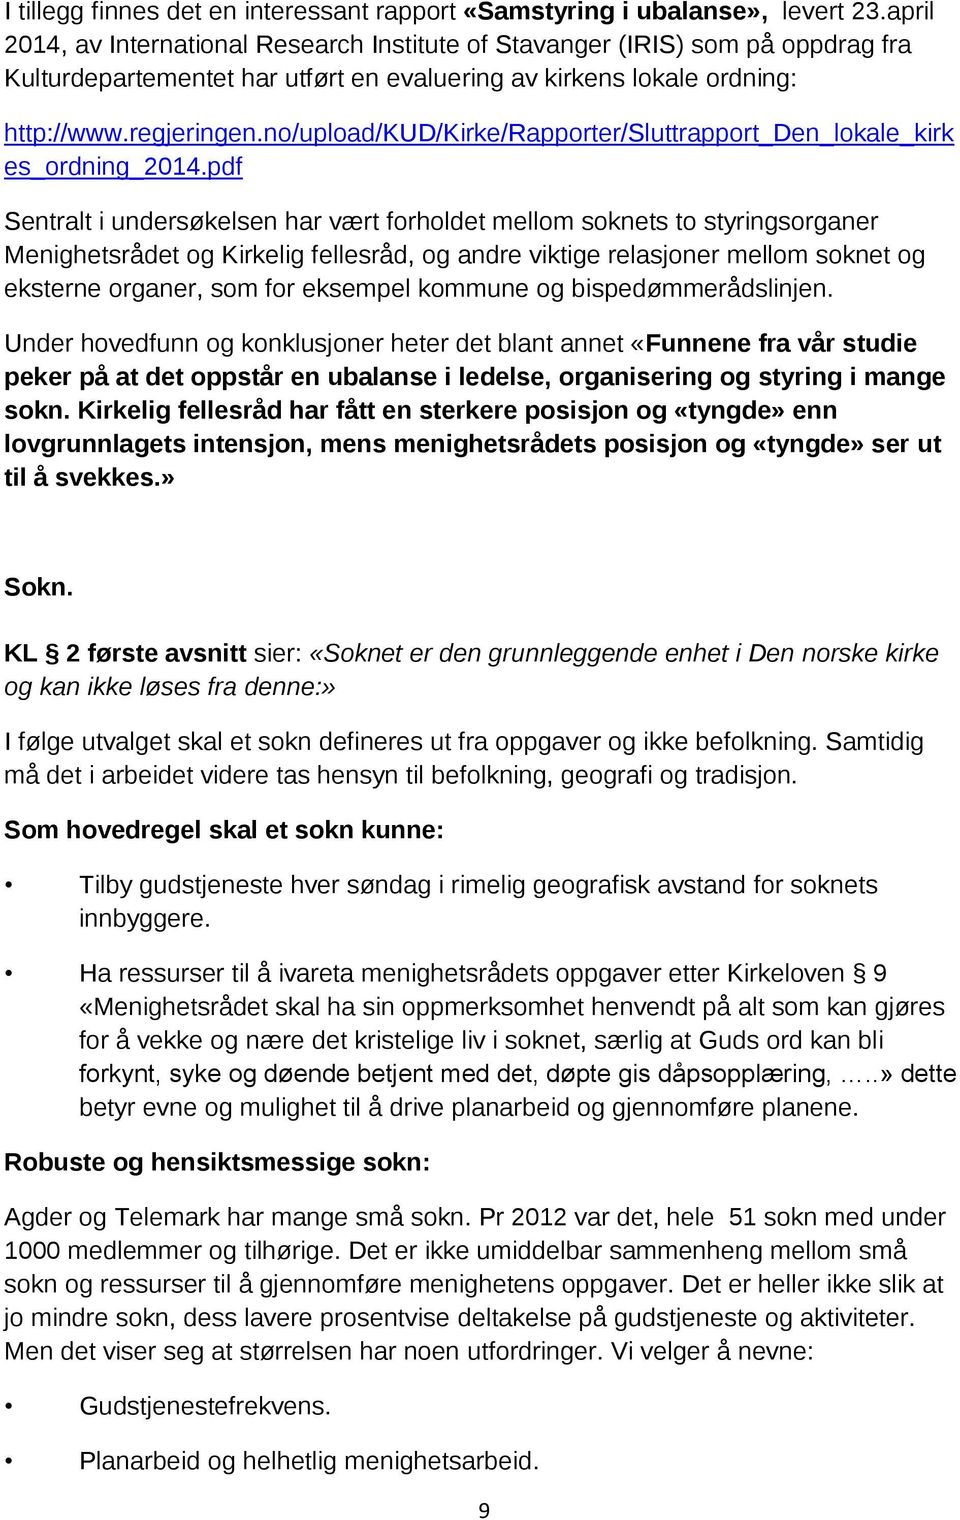 no/upload/kud/kirke/rapporter/sluttrapport_den_lokale_kirk es_ordning_2014.